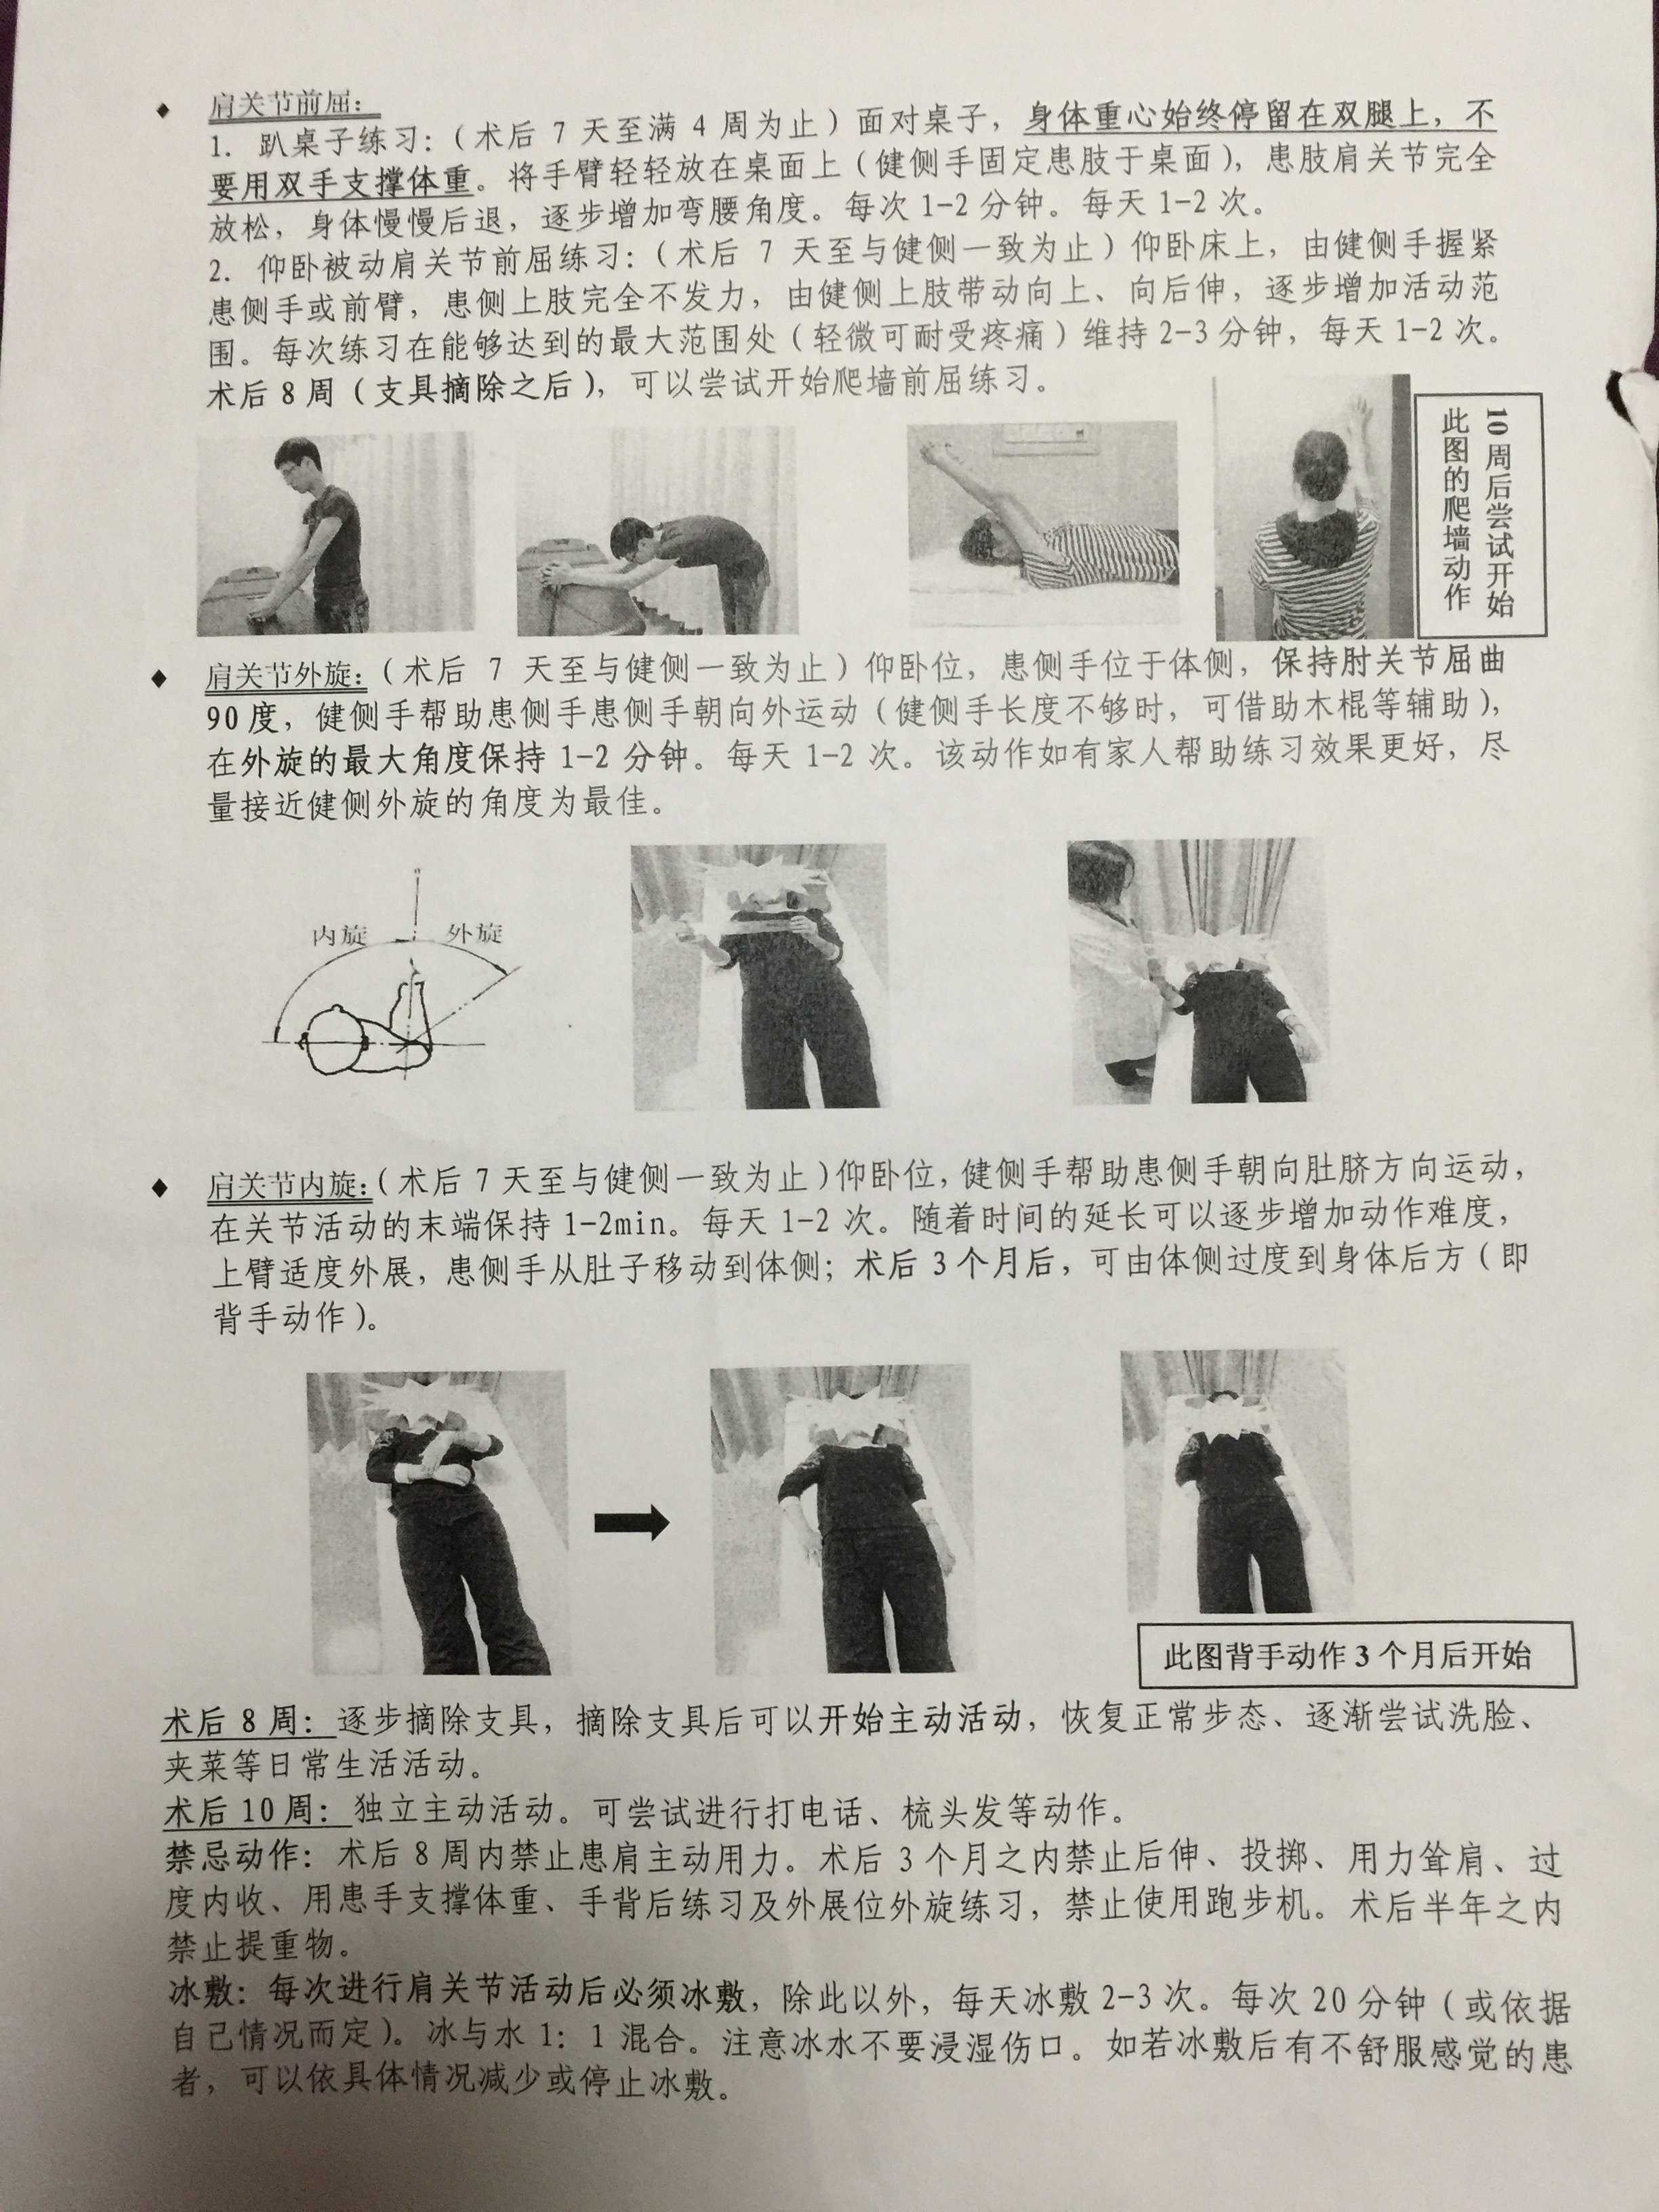 肩袖损伤正确锻炼方法图片